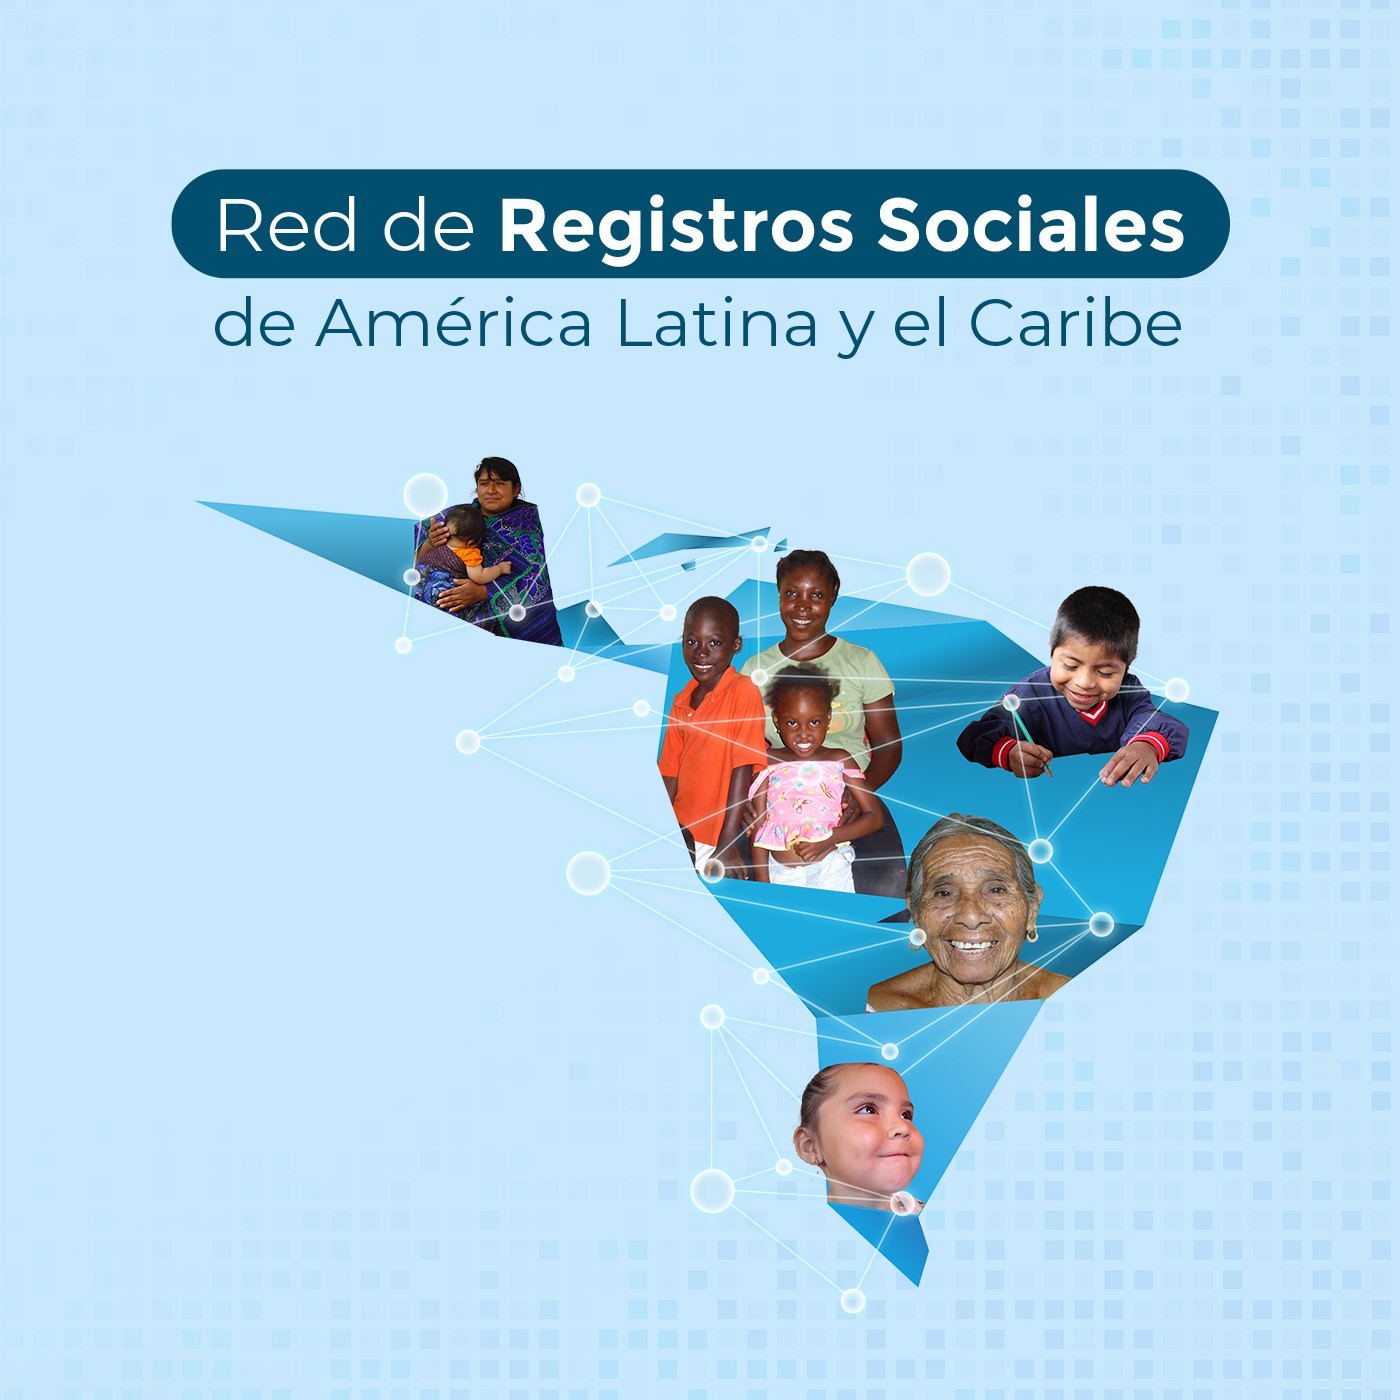 Red de Registros Sociales de los países de América Latina y el Caribe